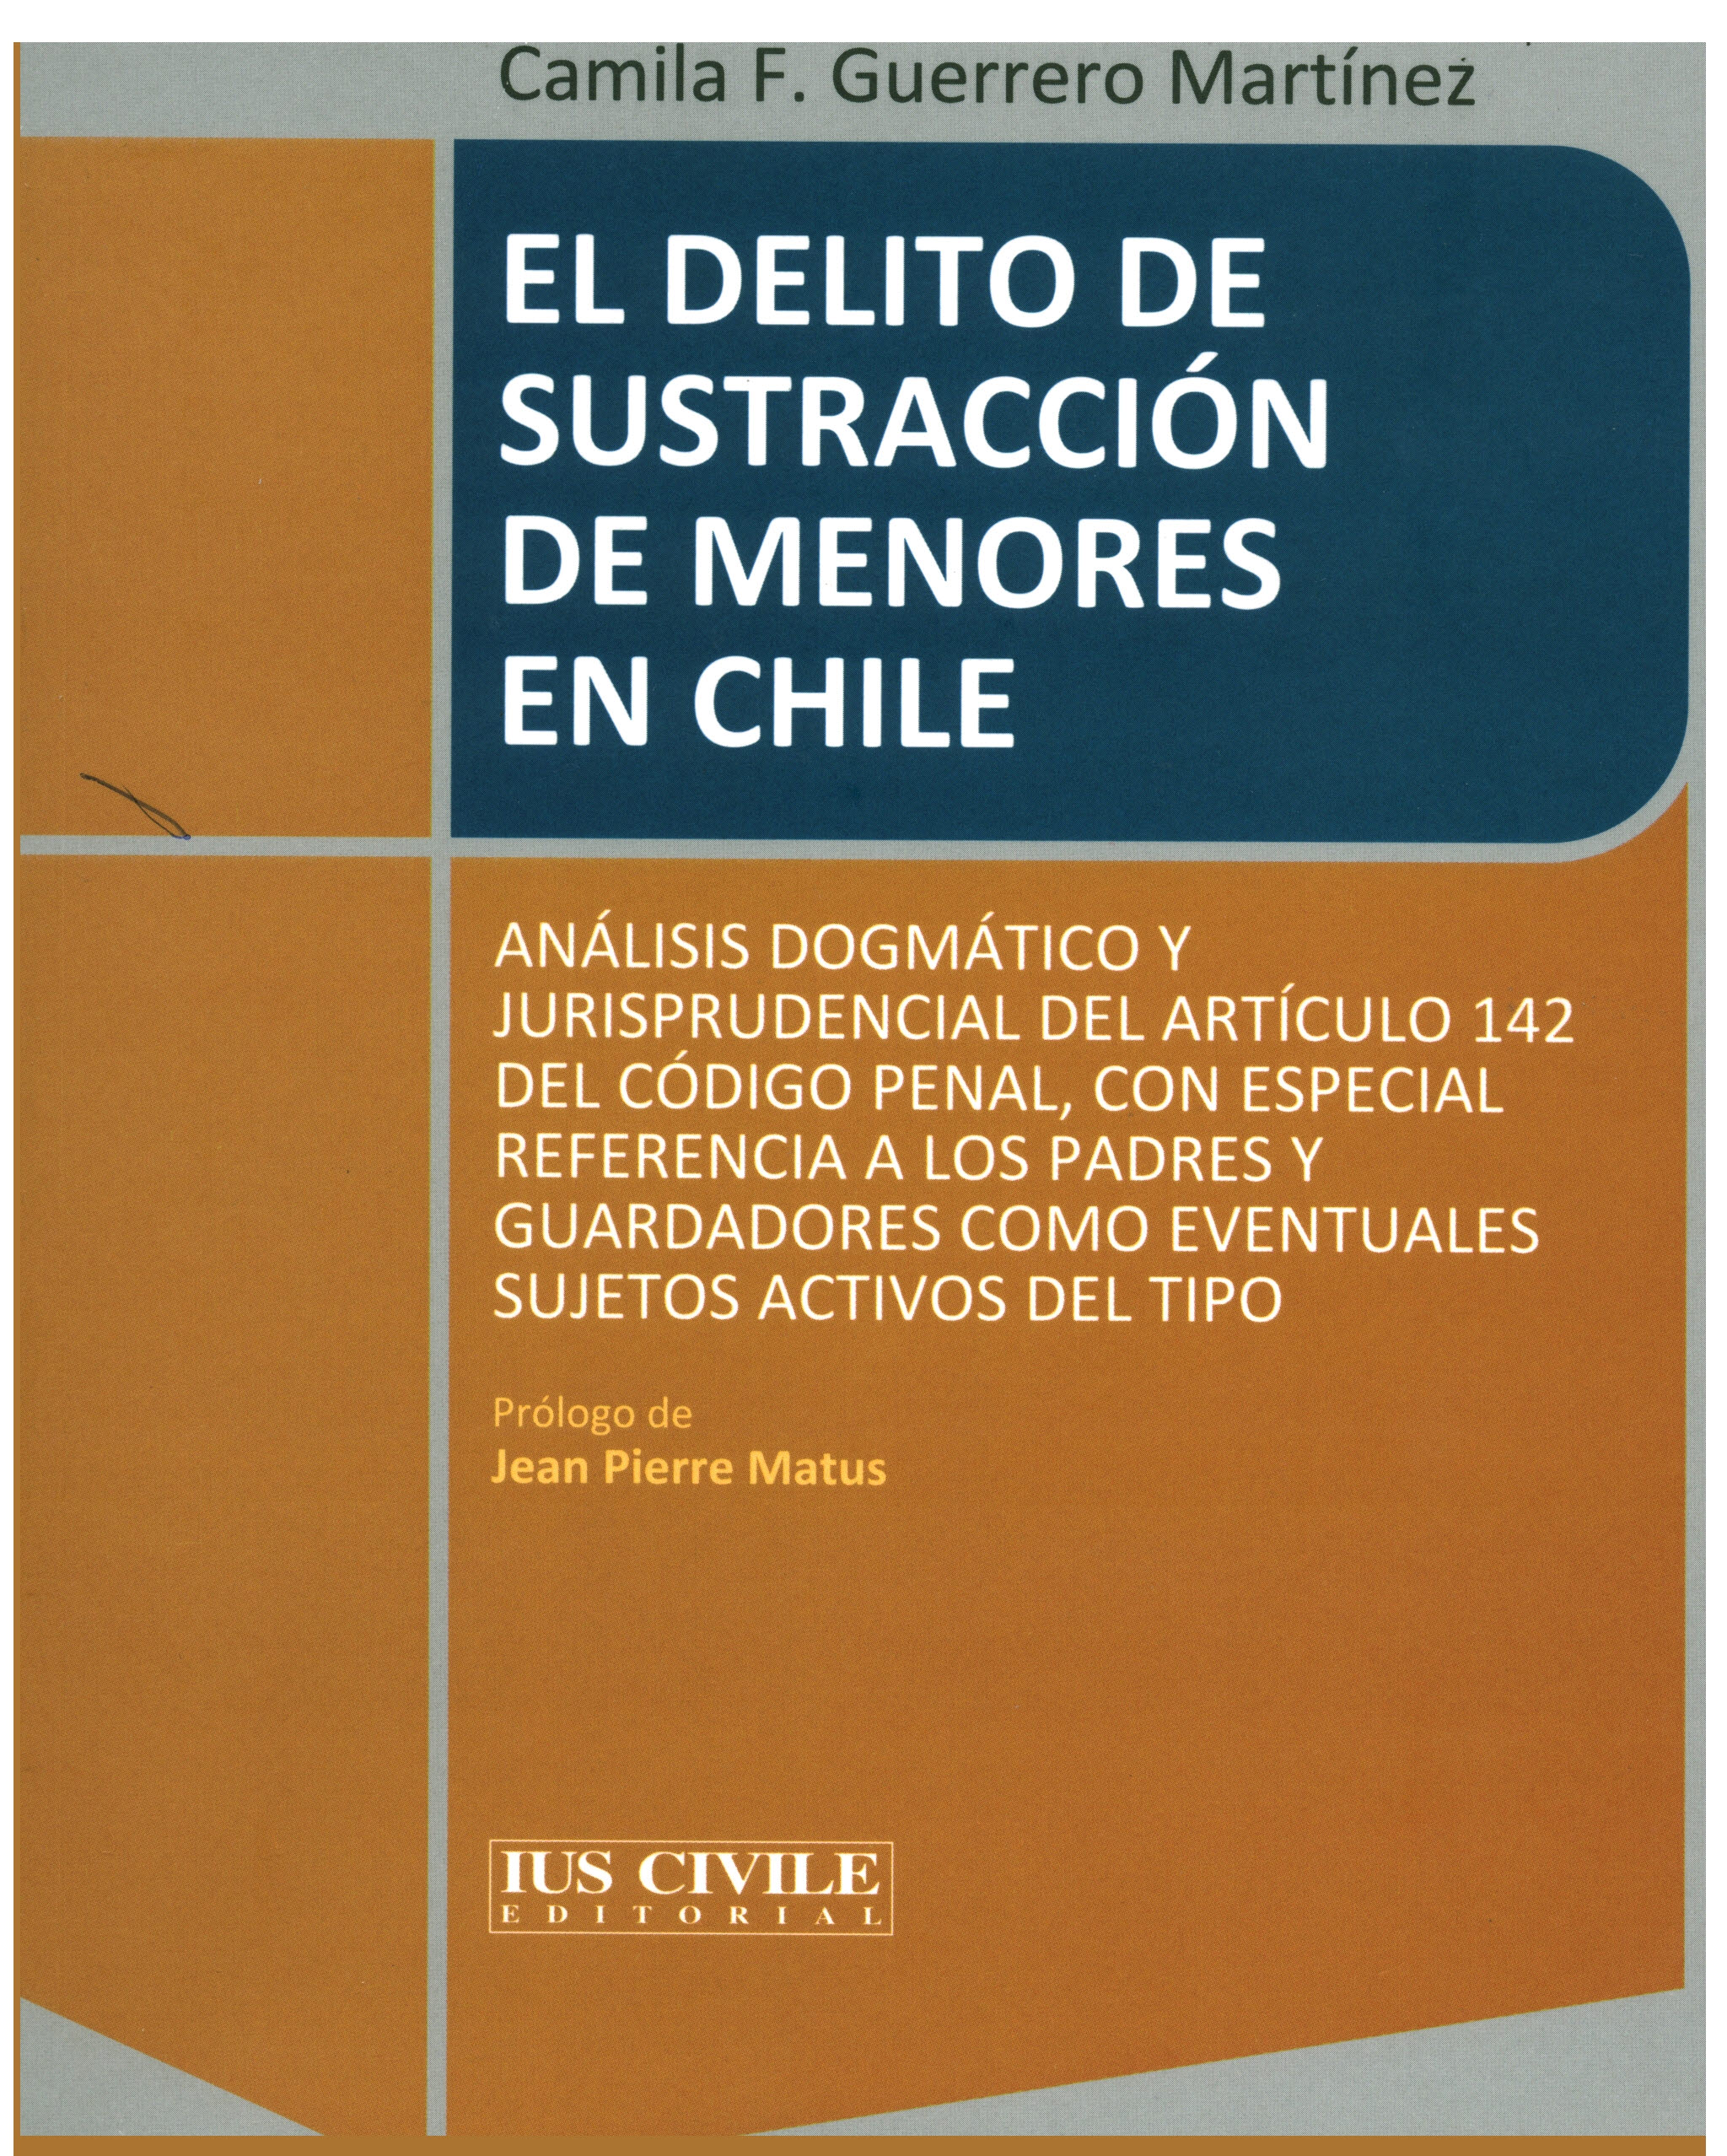 El delito de sustracción de menores en Chile.